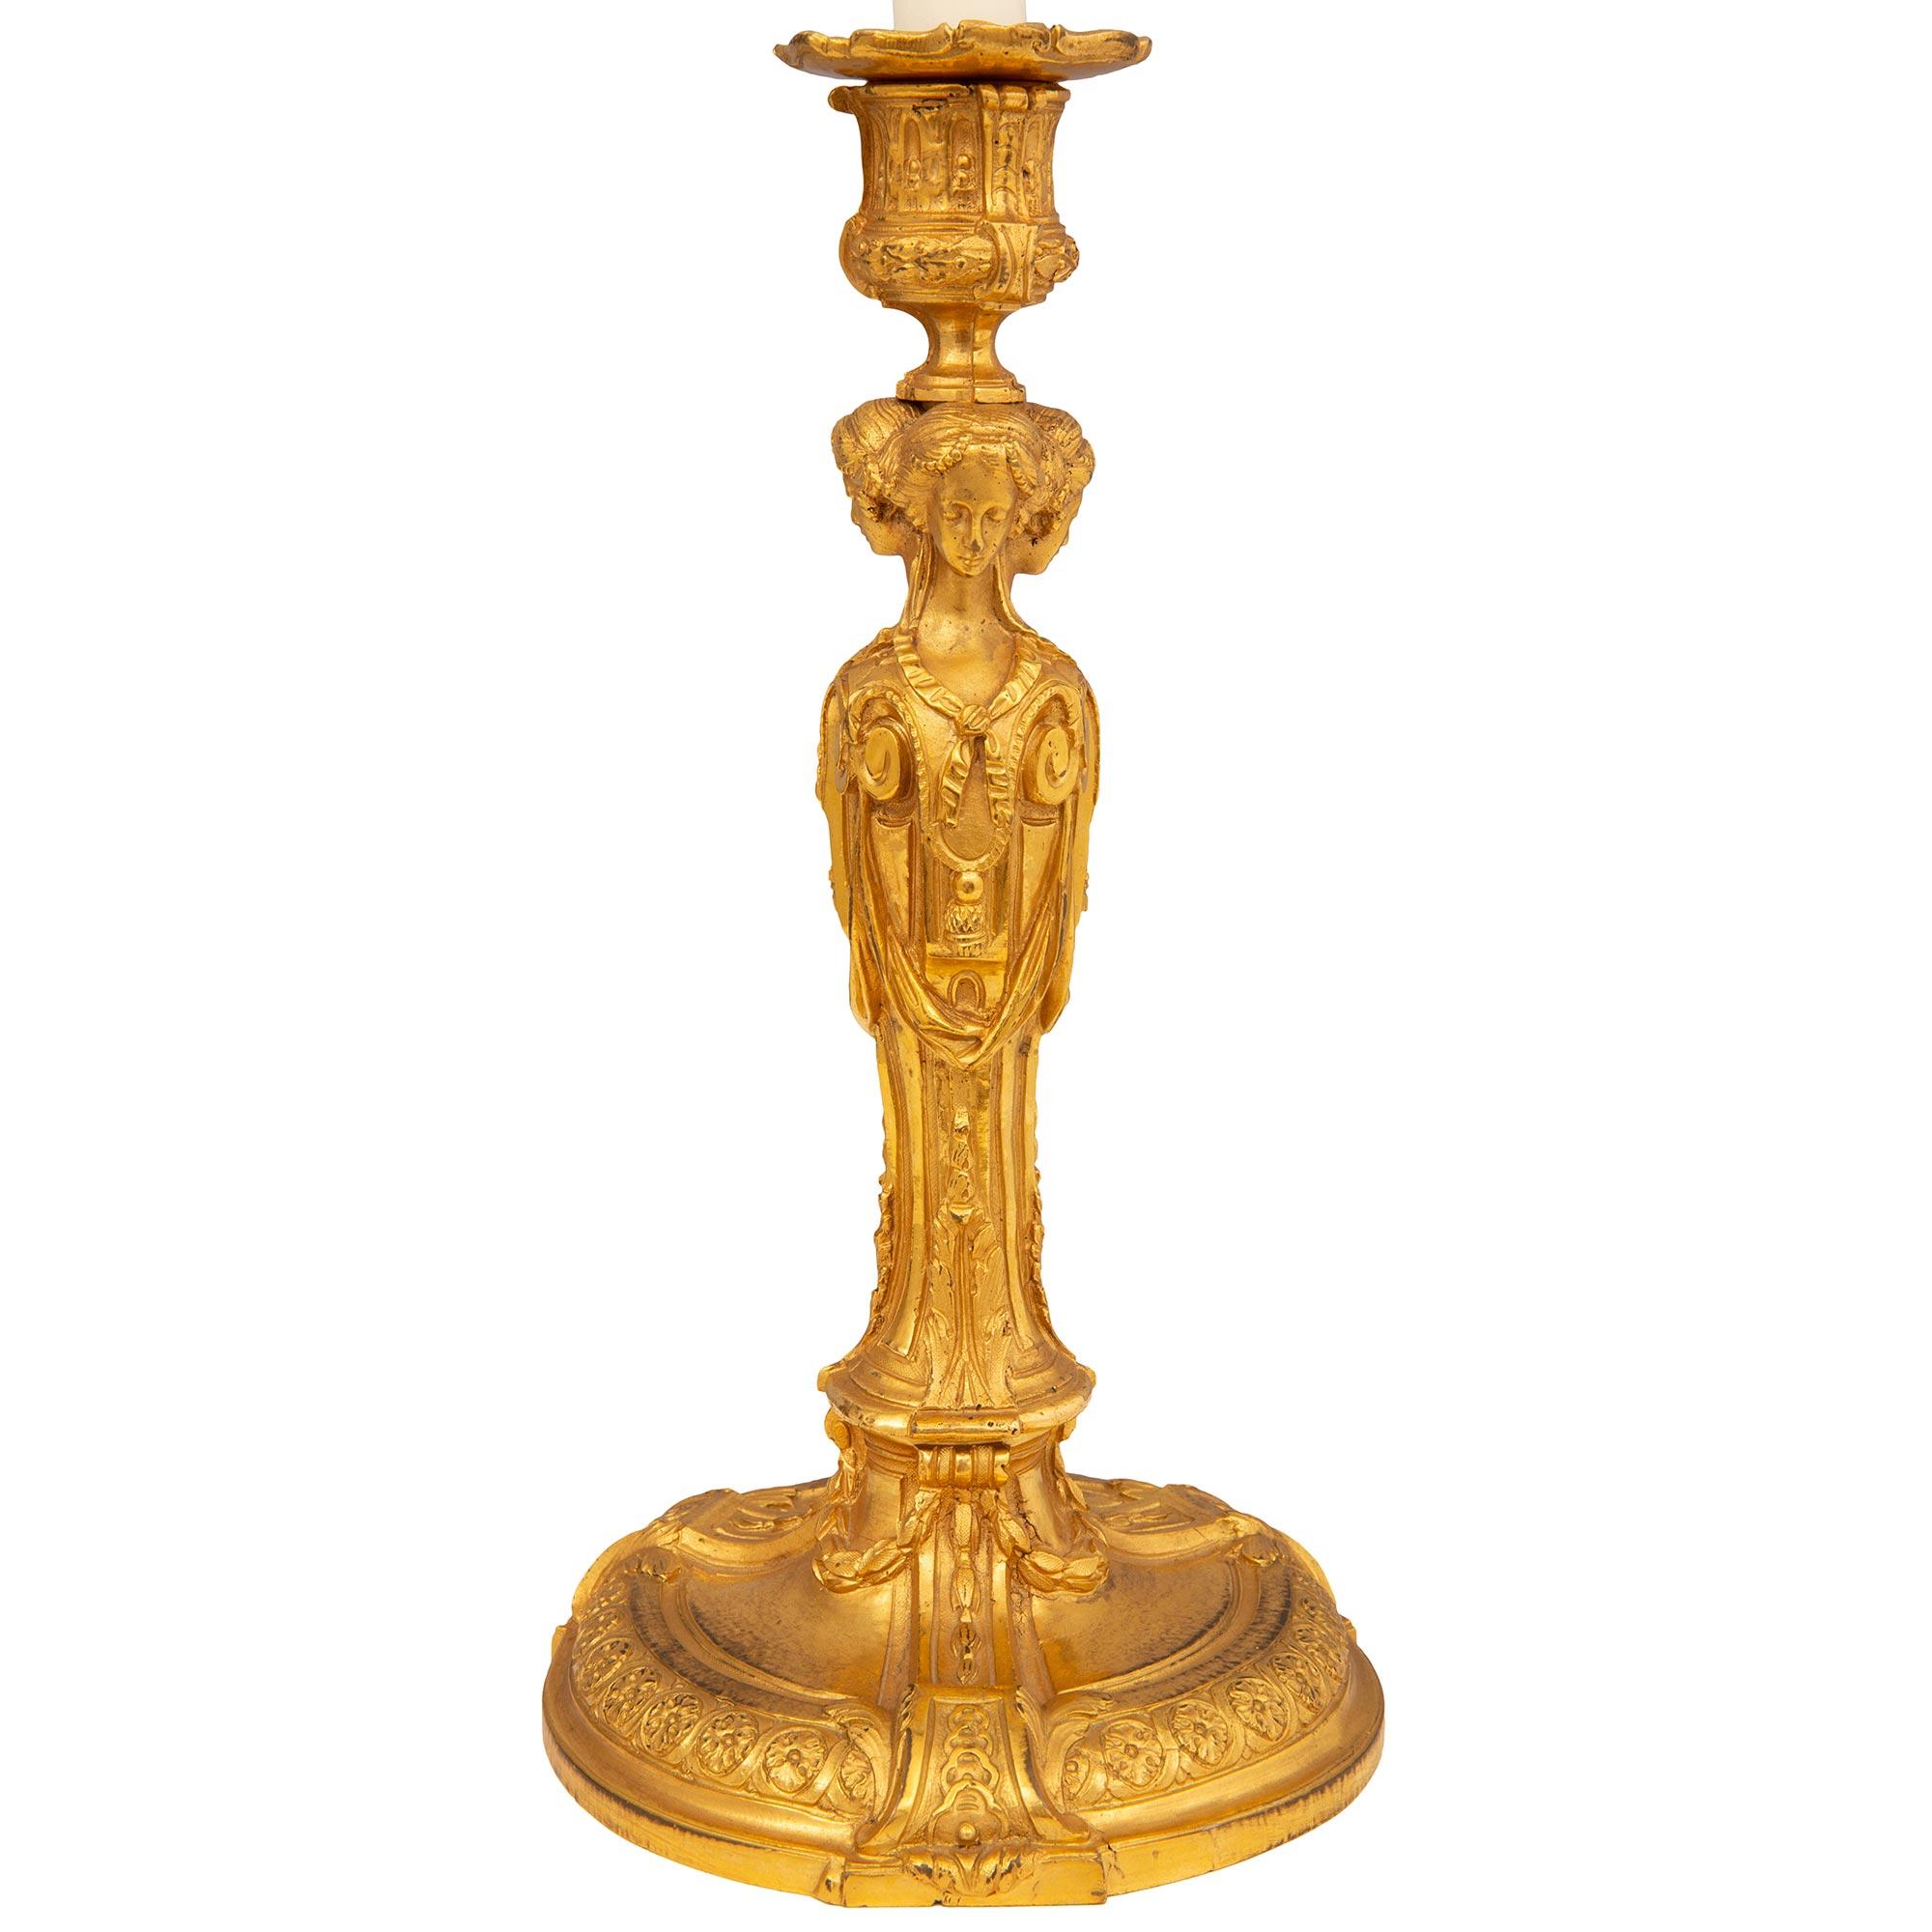 Une belle paire de chandeliers français du début du 19ème siècle, de style Louis XVI, en bronze doré. Chaque chandelier est surélevé par une base circulaire au motif finement marbré et des bandes enveloppantes très décoratives aux motifs